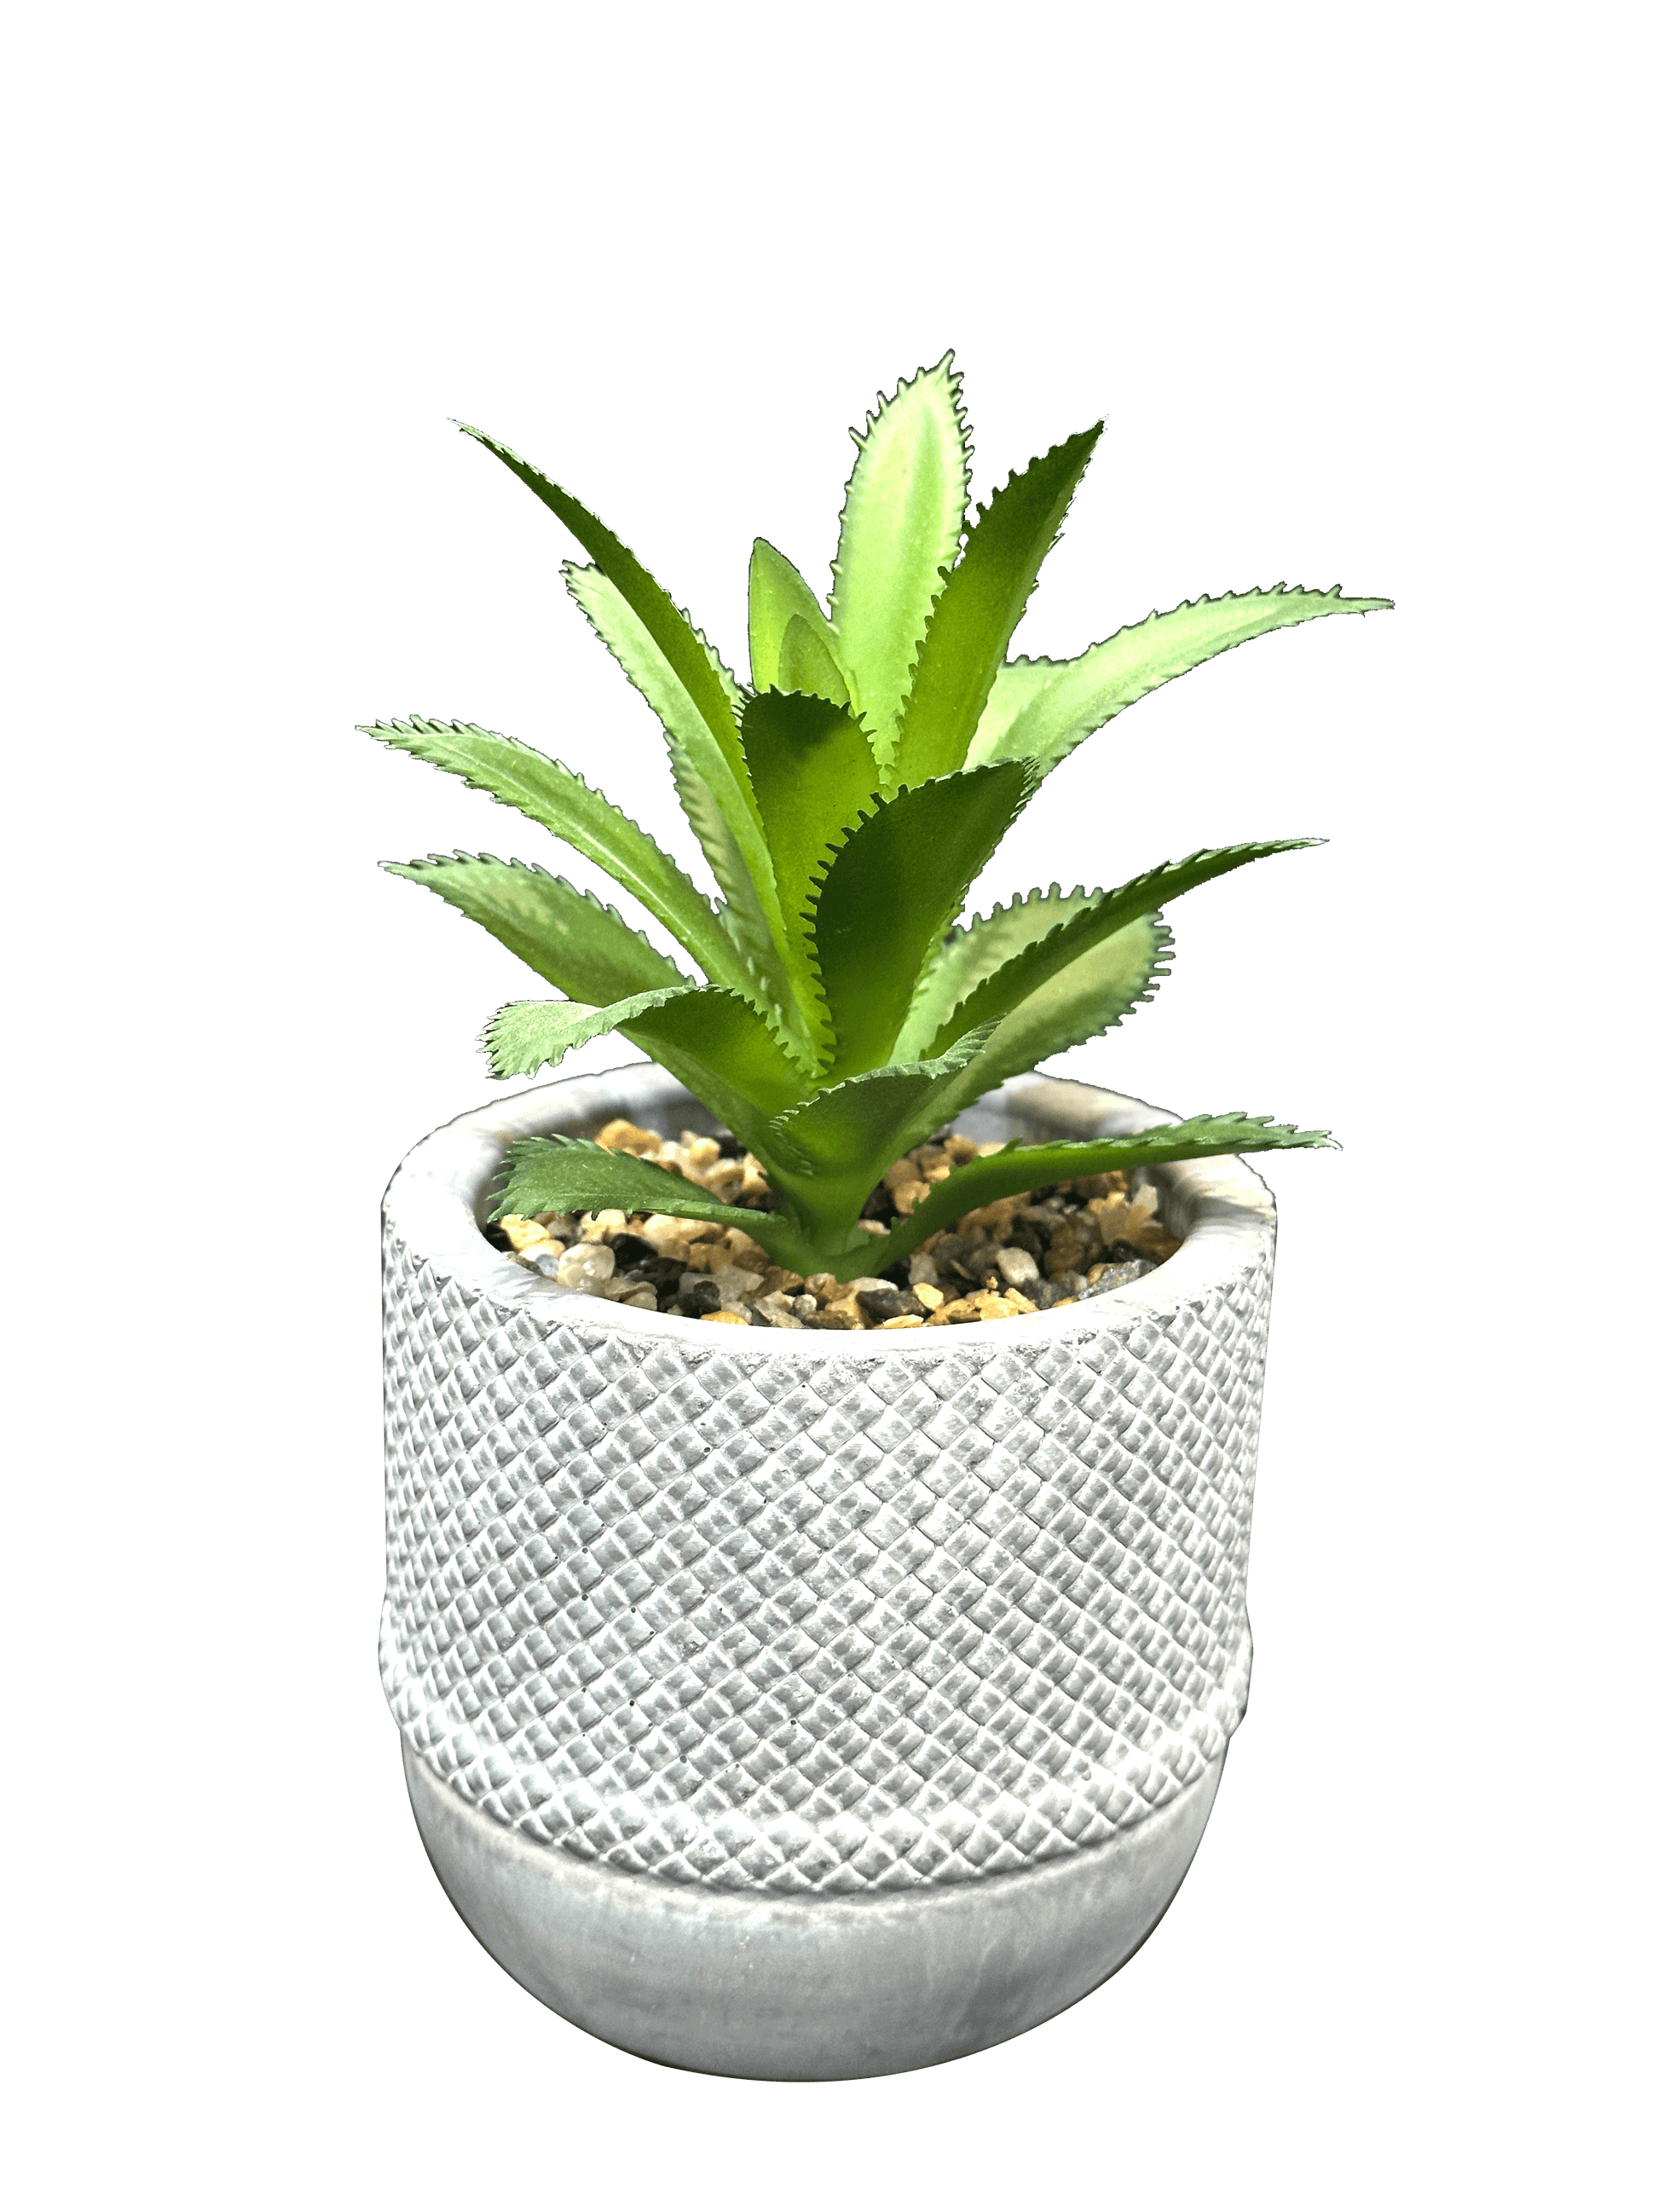 White Succulent Pots Planter (3 Pcs Set) - Sunset Gifts Store